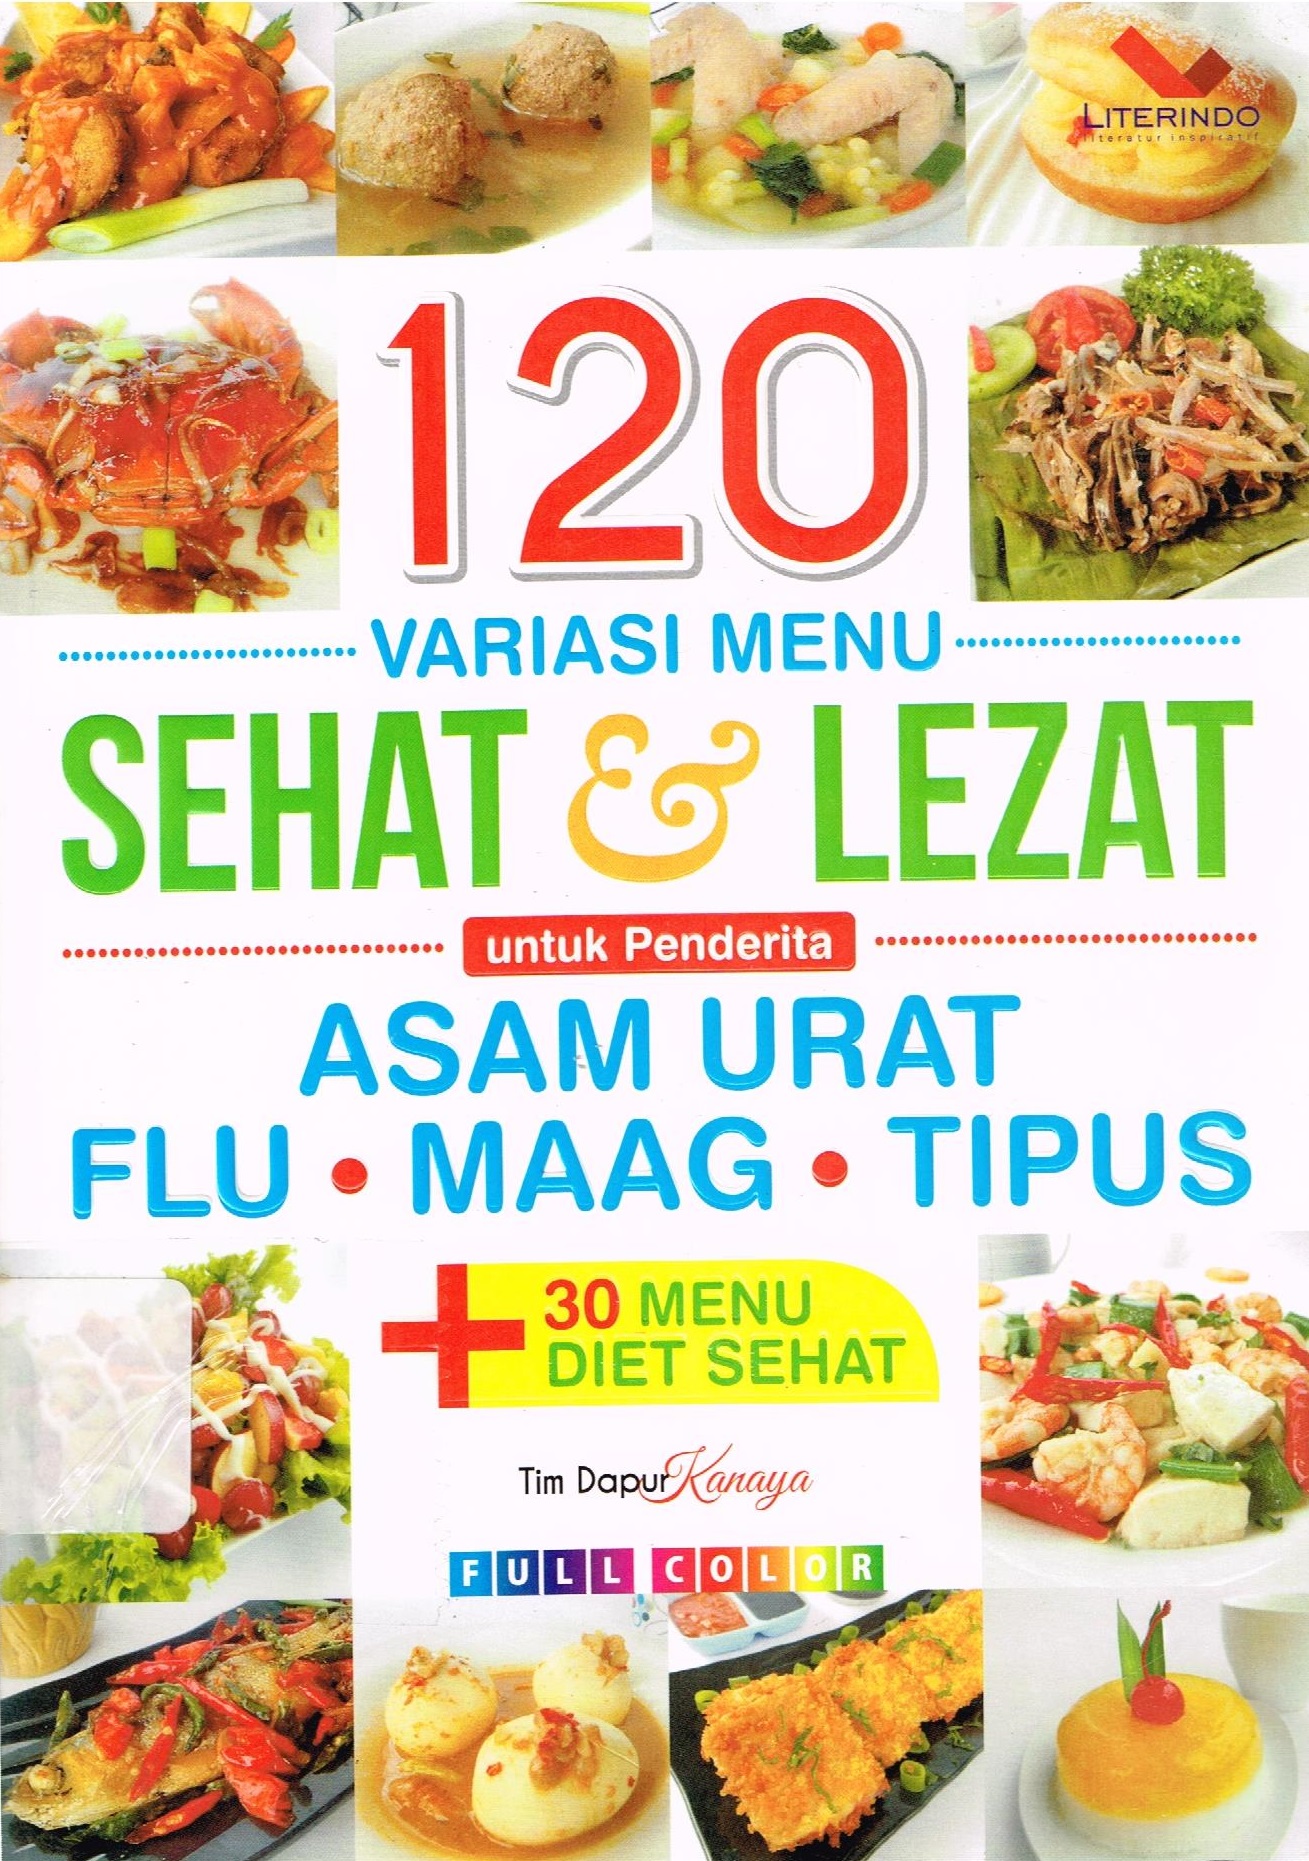 120 Variasi Menu Sehat & Lezat untuk Penderita Asam Urat, Flu, Maag, Tipus